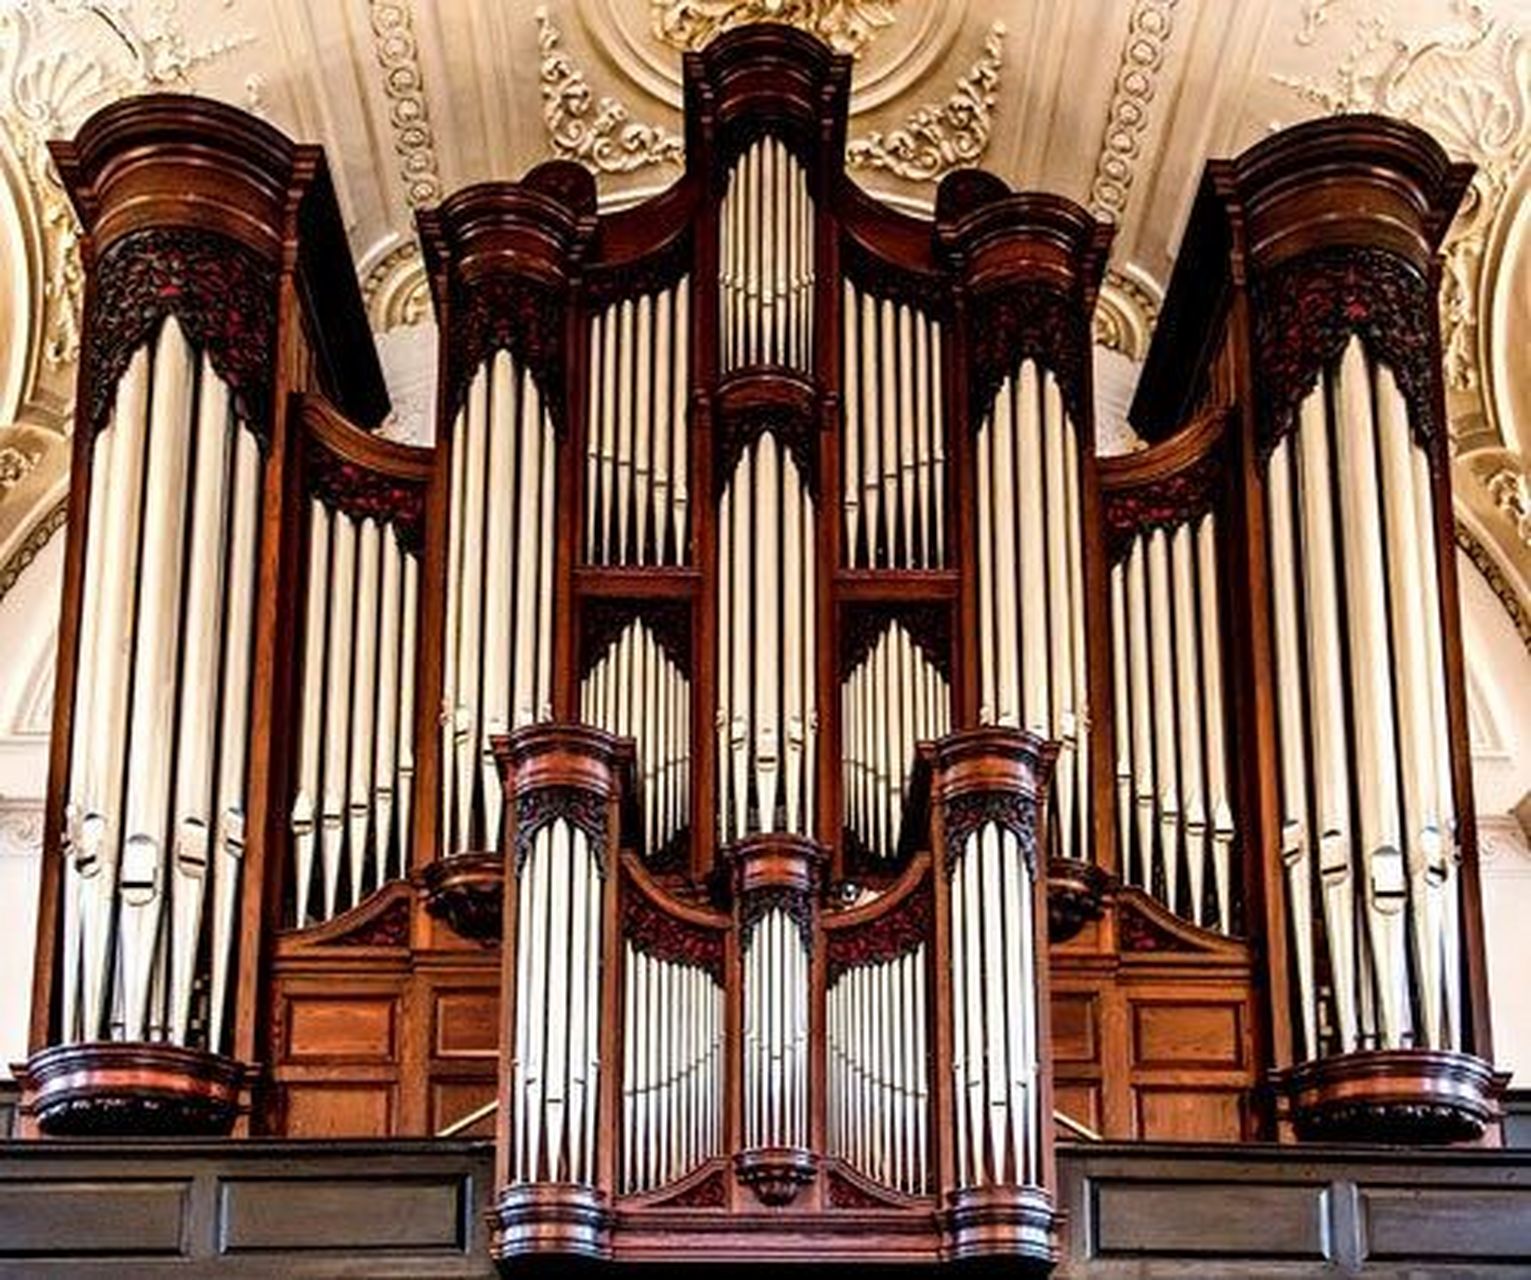 世界上体积最大的乐器: 管风琴  管风琴(pipe organ),气鸣式键盘乐器